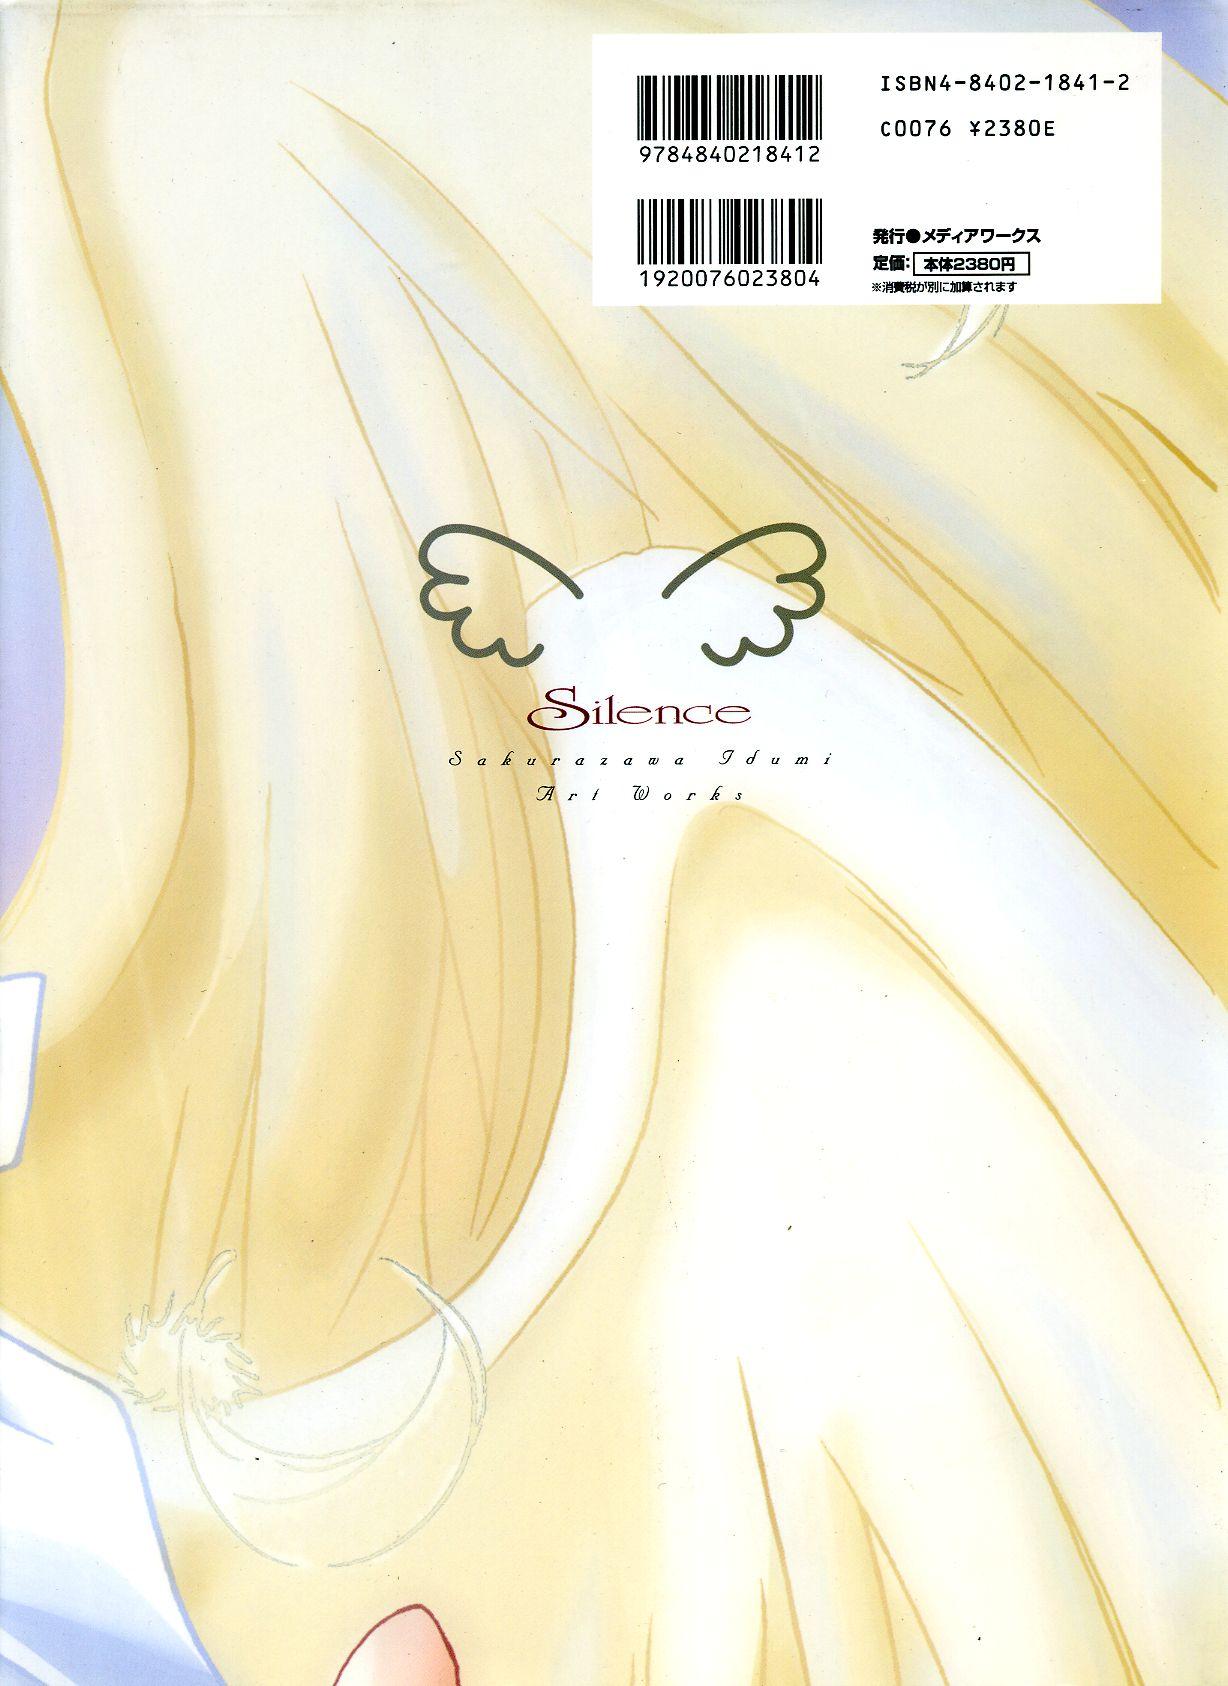 [Sakurazawa Izumi] Silence - Seinaru Yoru no Kane no Naka de... Tenshi no Album - Sakurazawa Izumi Artworks 115